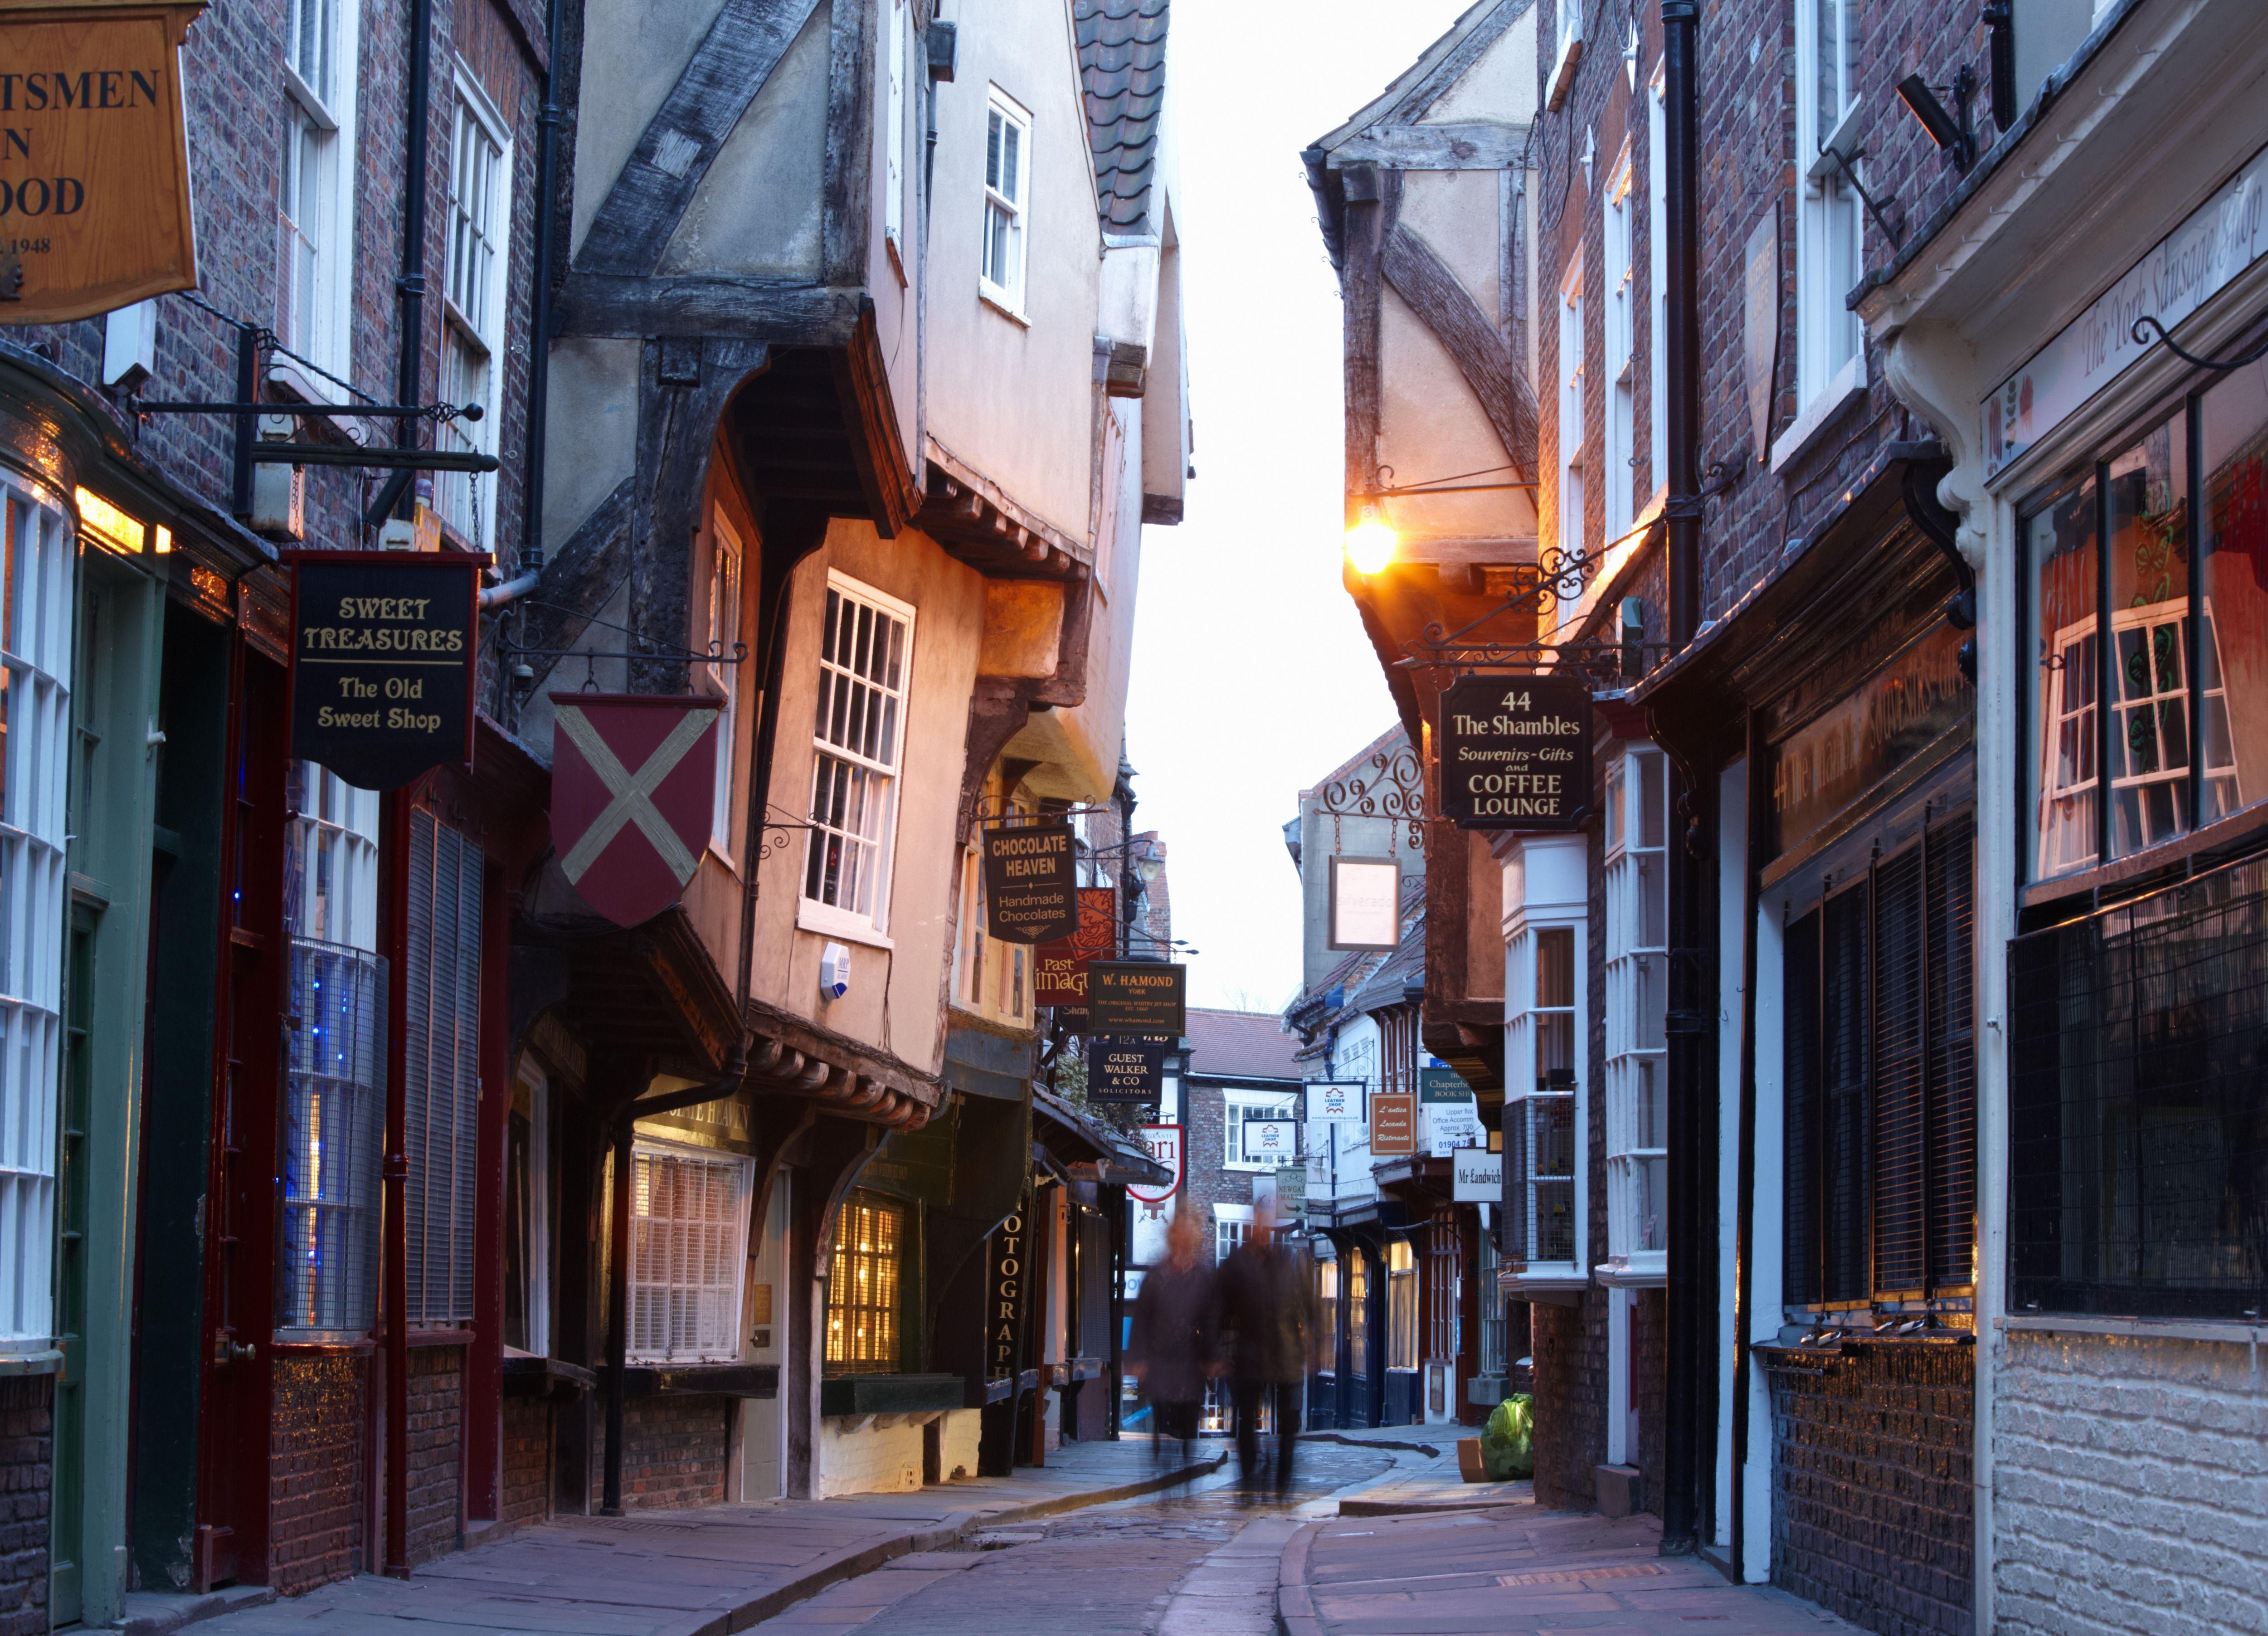 5002x3608 Ảnh: Một bức ảnh đáng yêu về The Shambles ở York England cho bạn